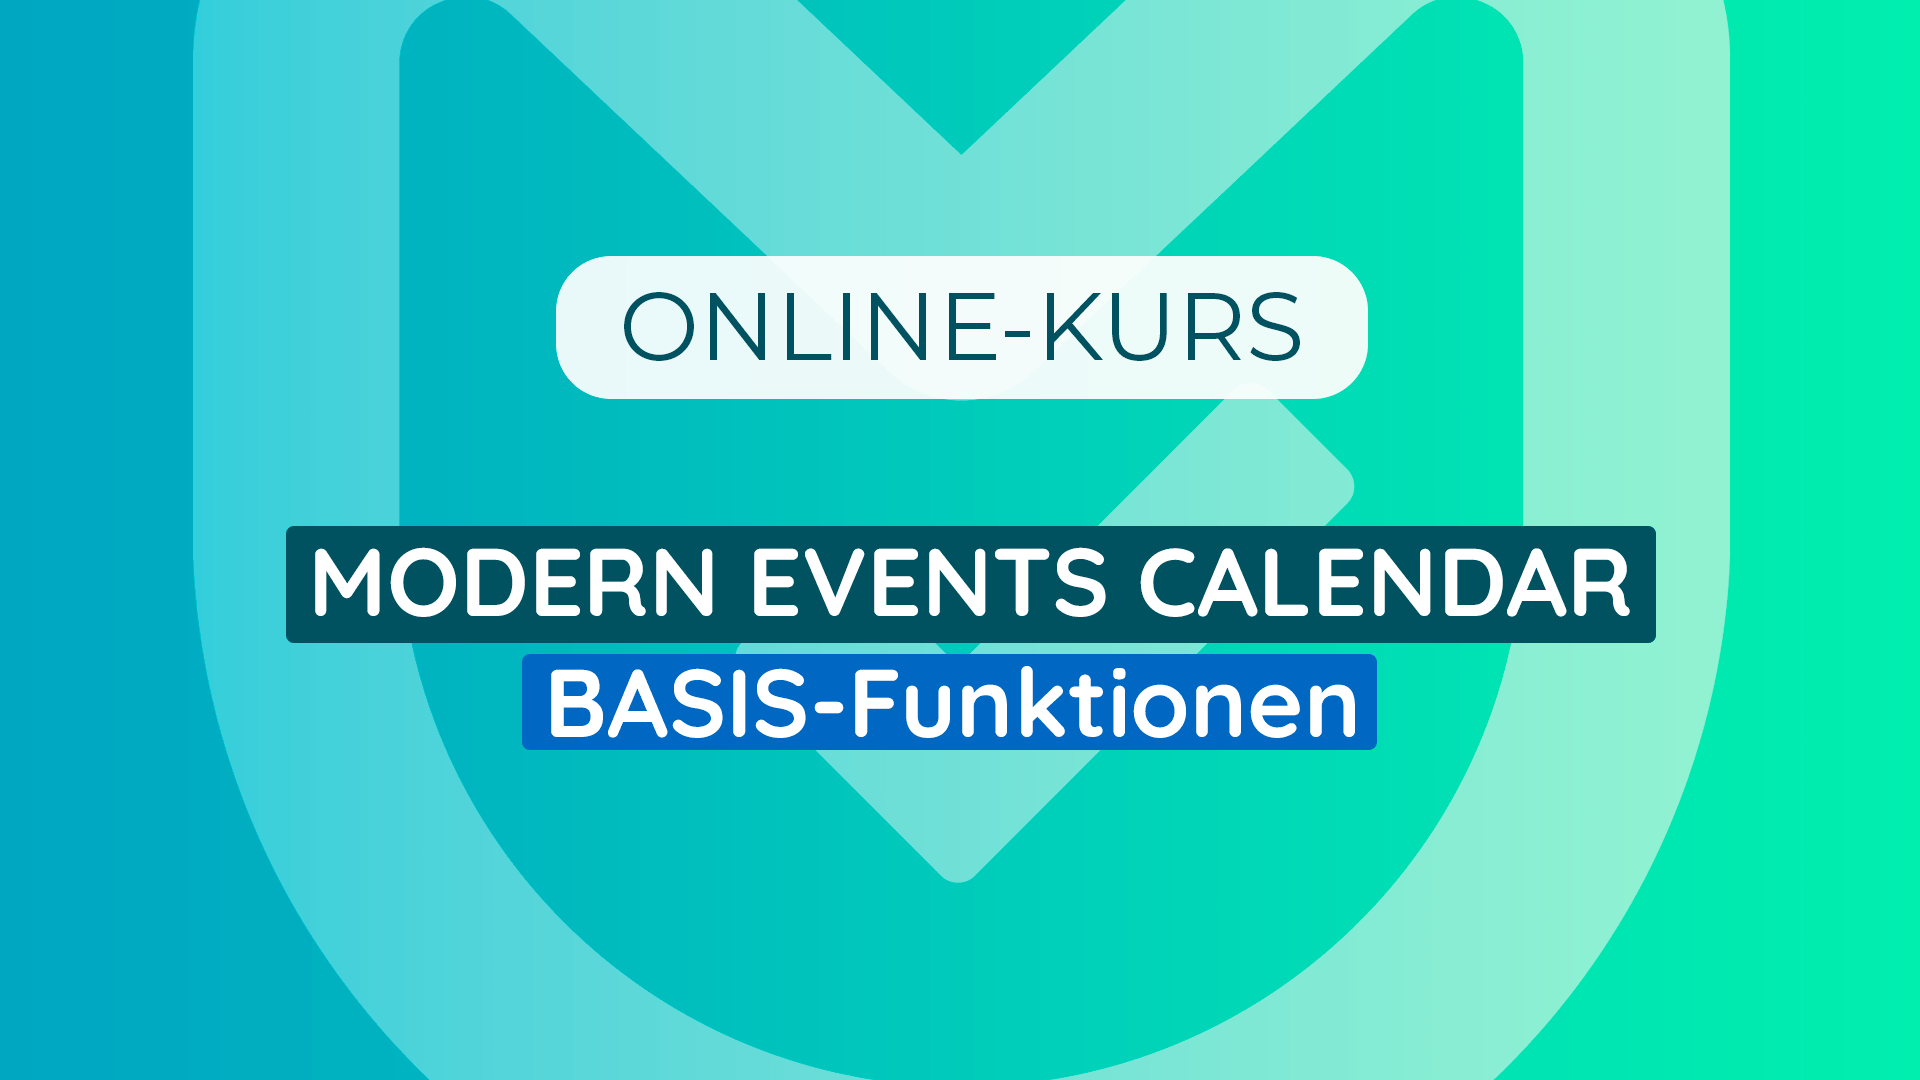 Modern Events Calendar - Online-Kurs